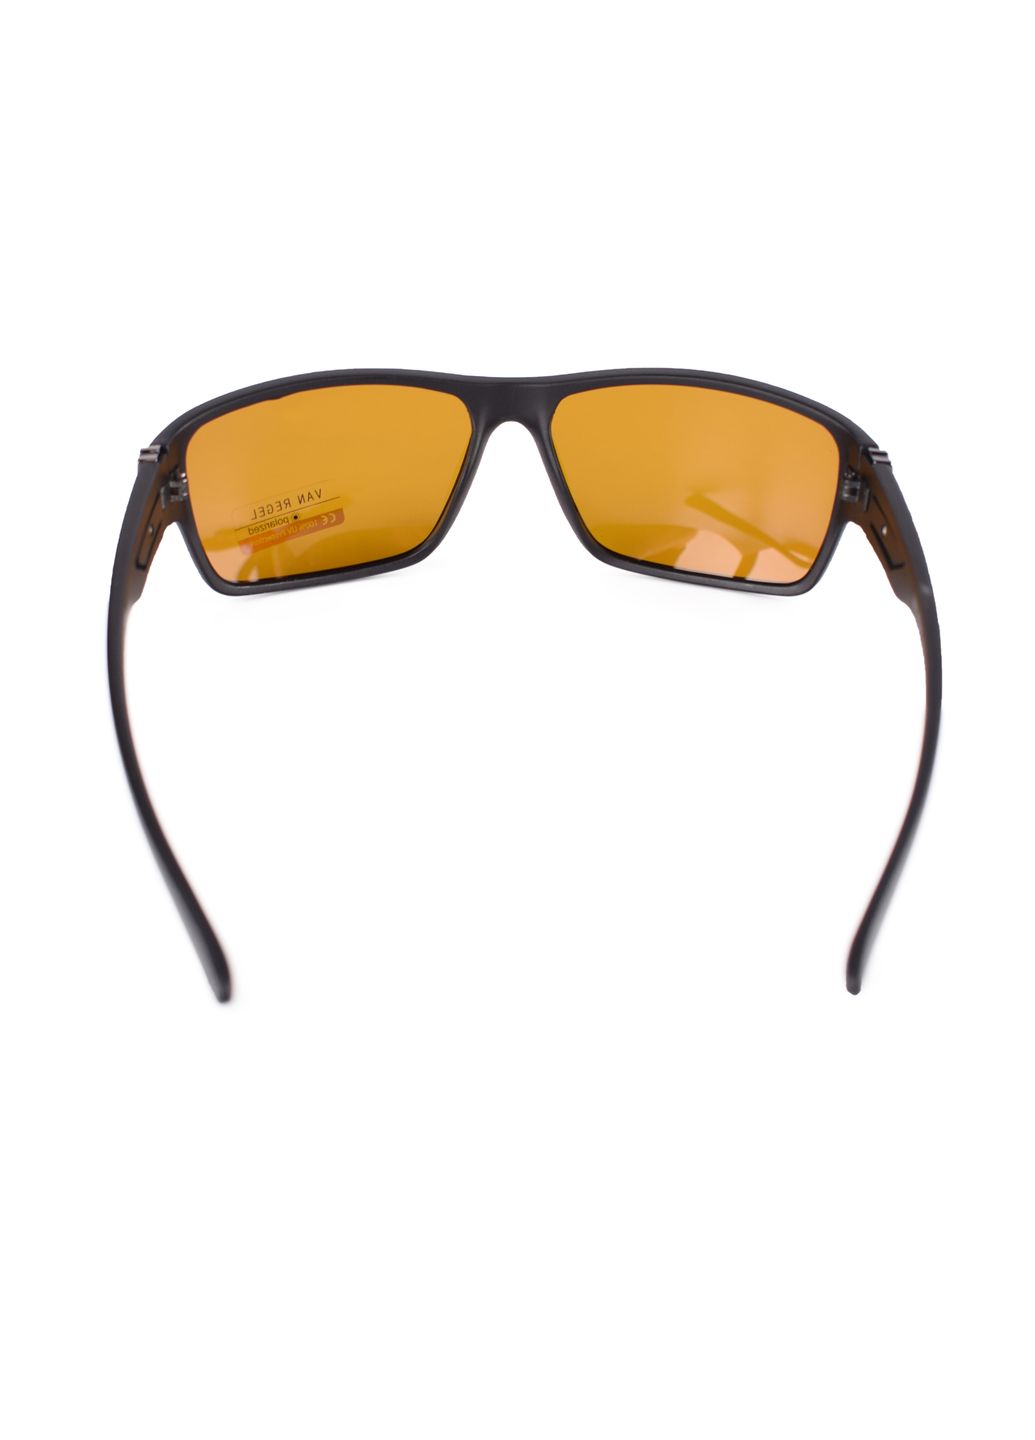 Купить Мужские очки для водителя VAN REGEL P1824 123004 - Черный в интернет-магазине